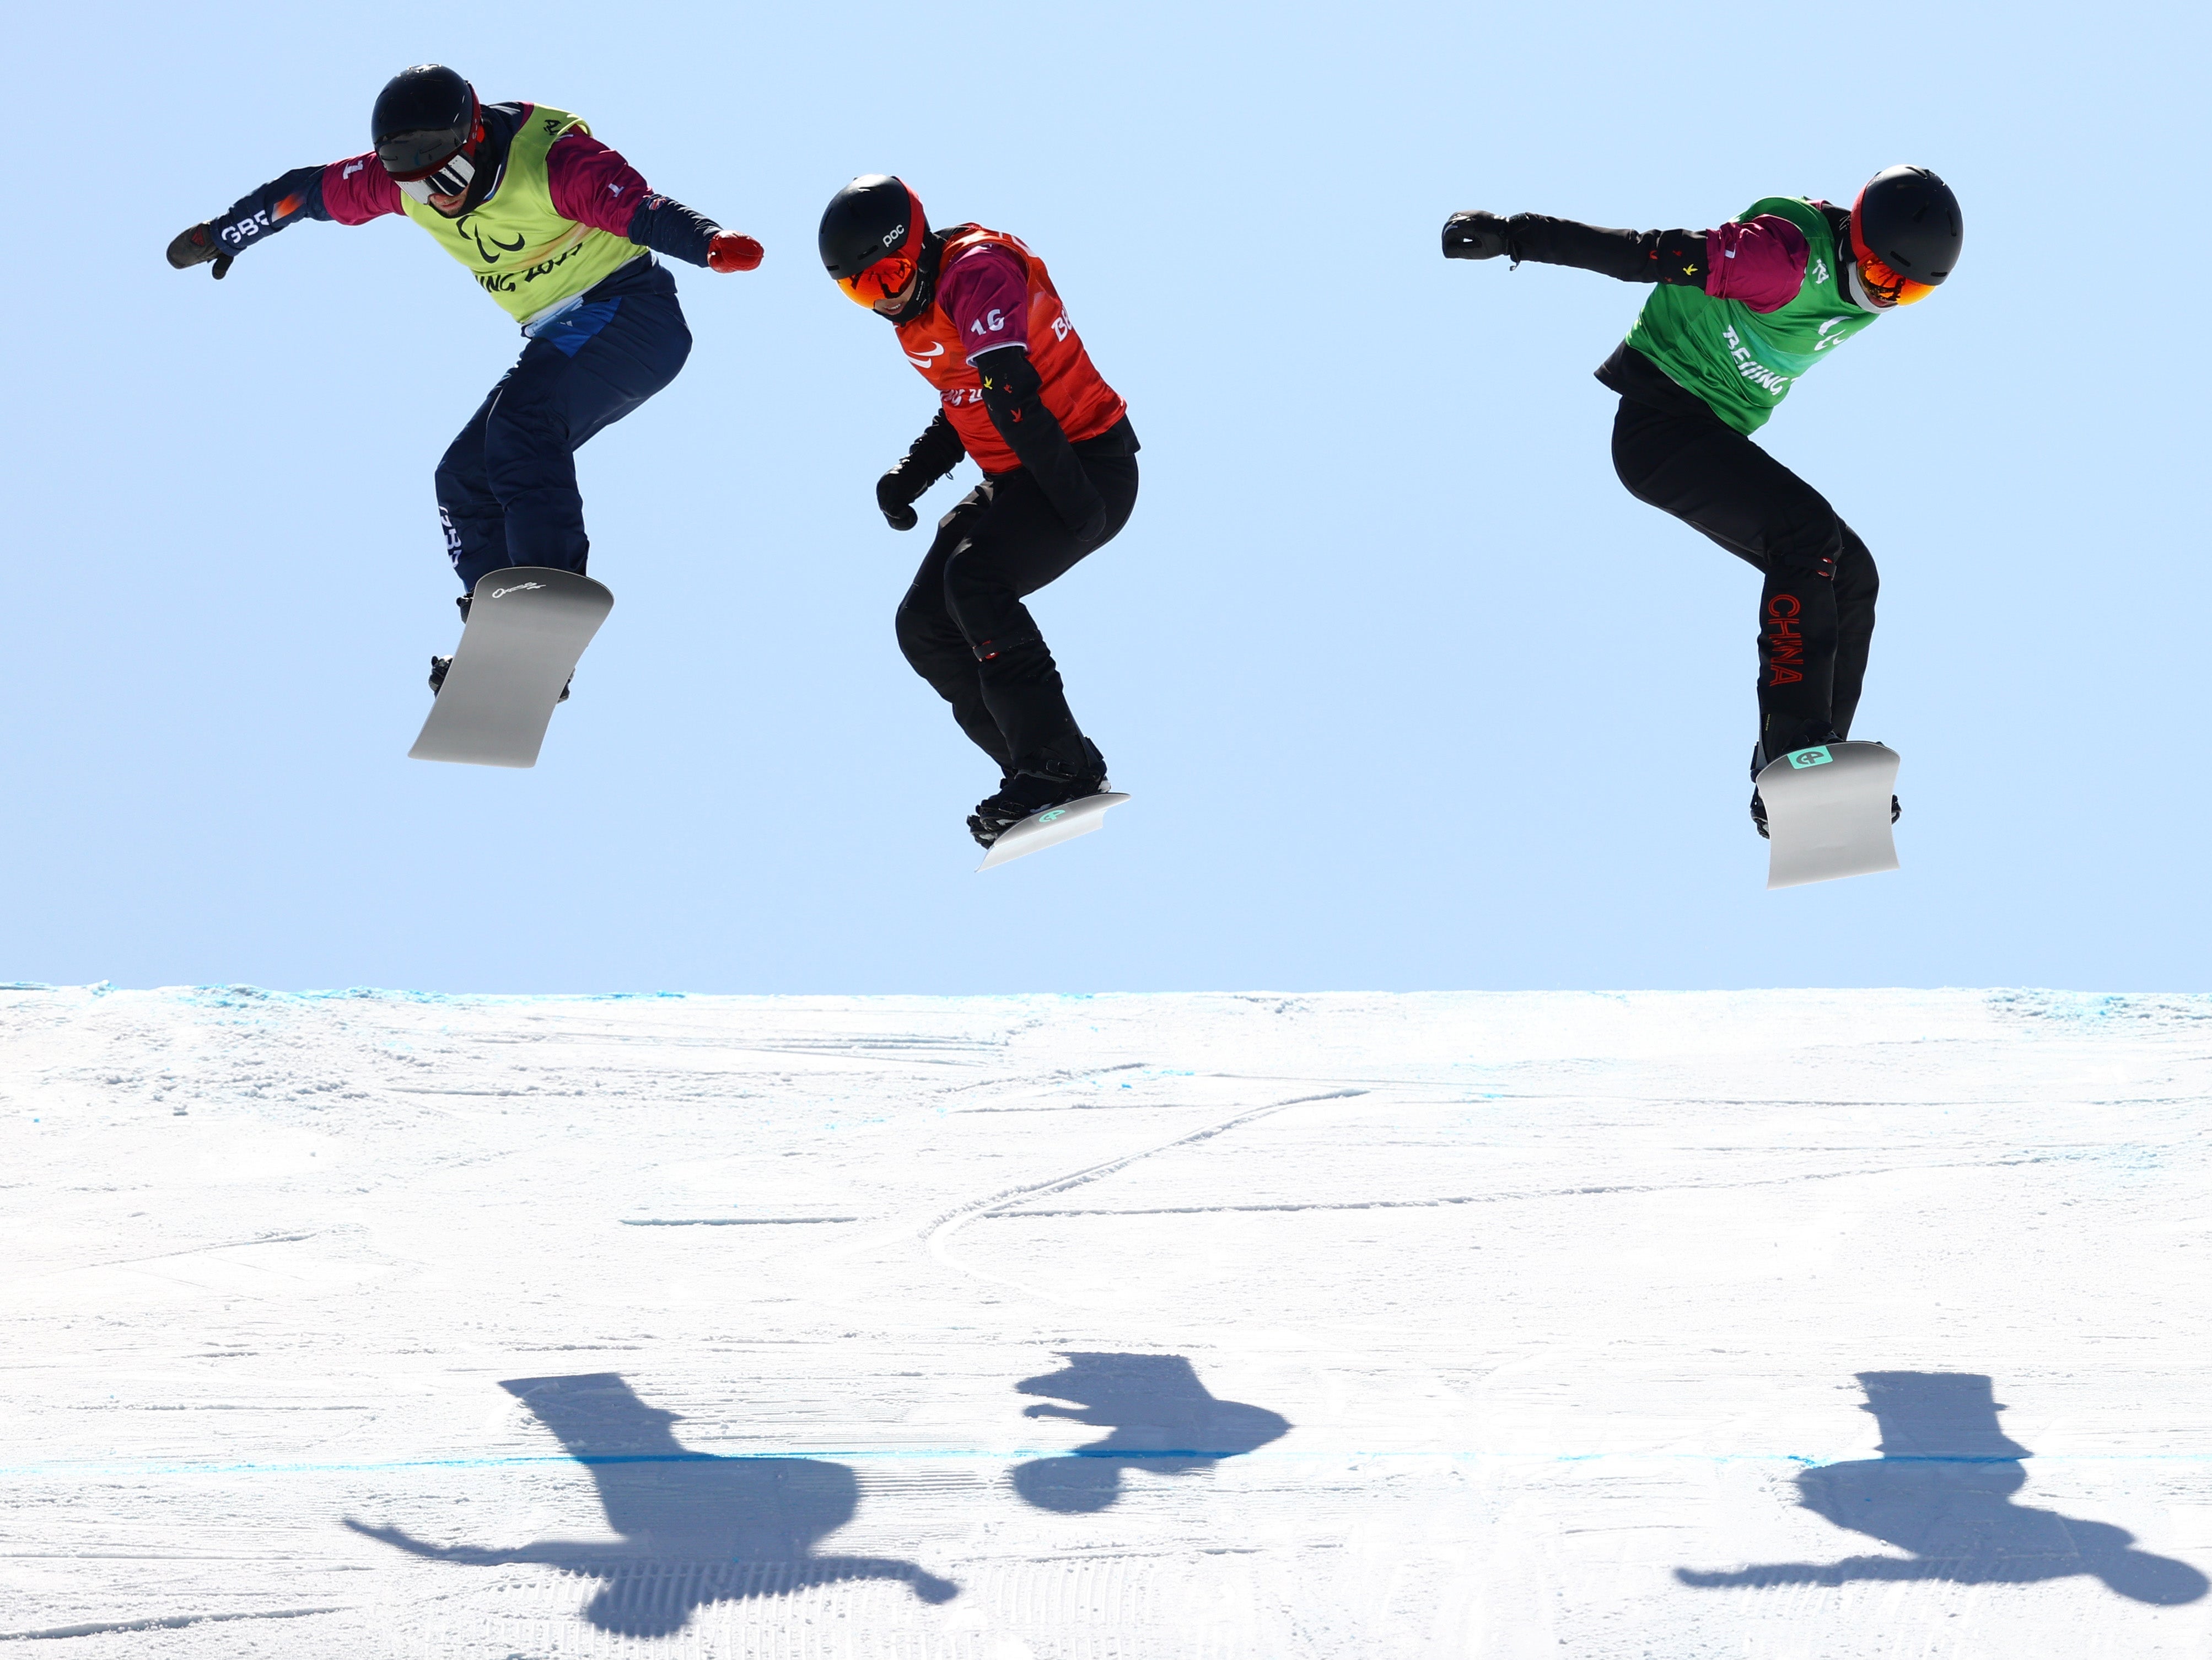 James Barnes-Miller (left) missed out on a snowboard cross medal in Beijing